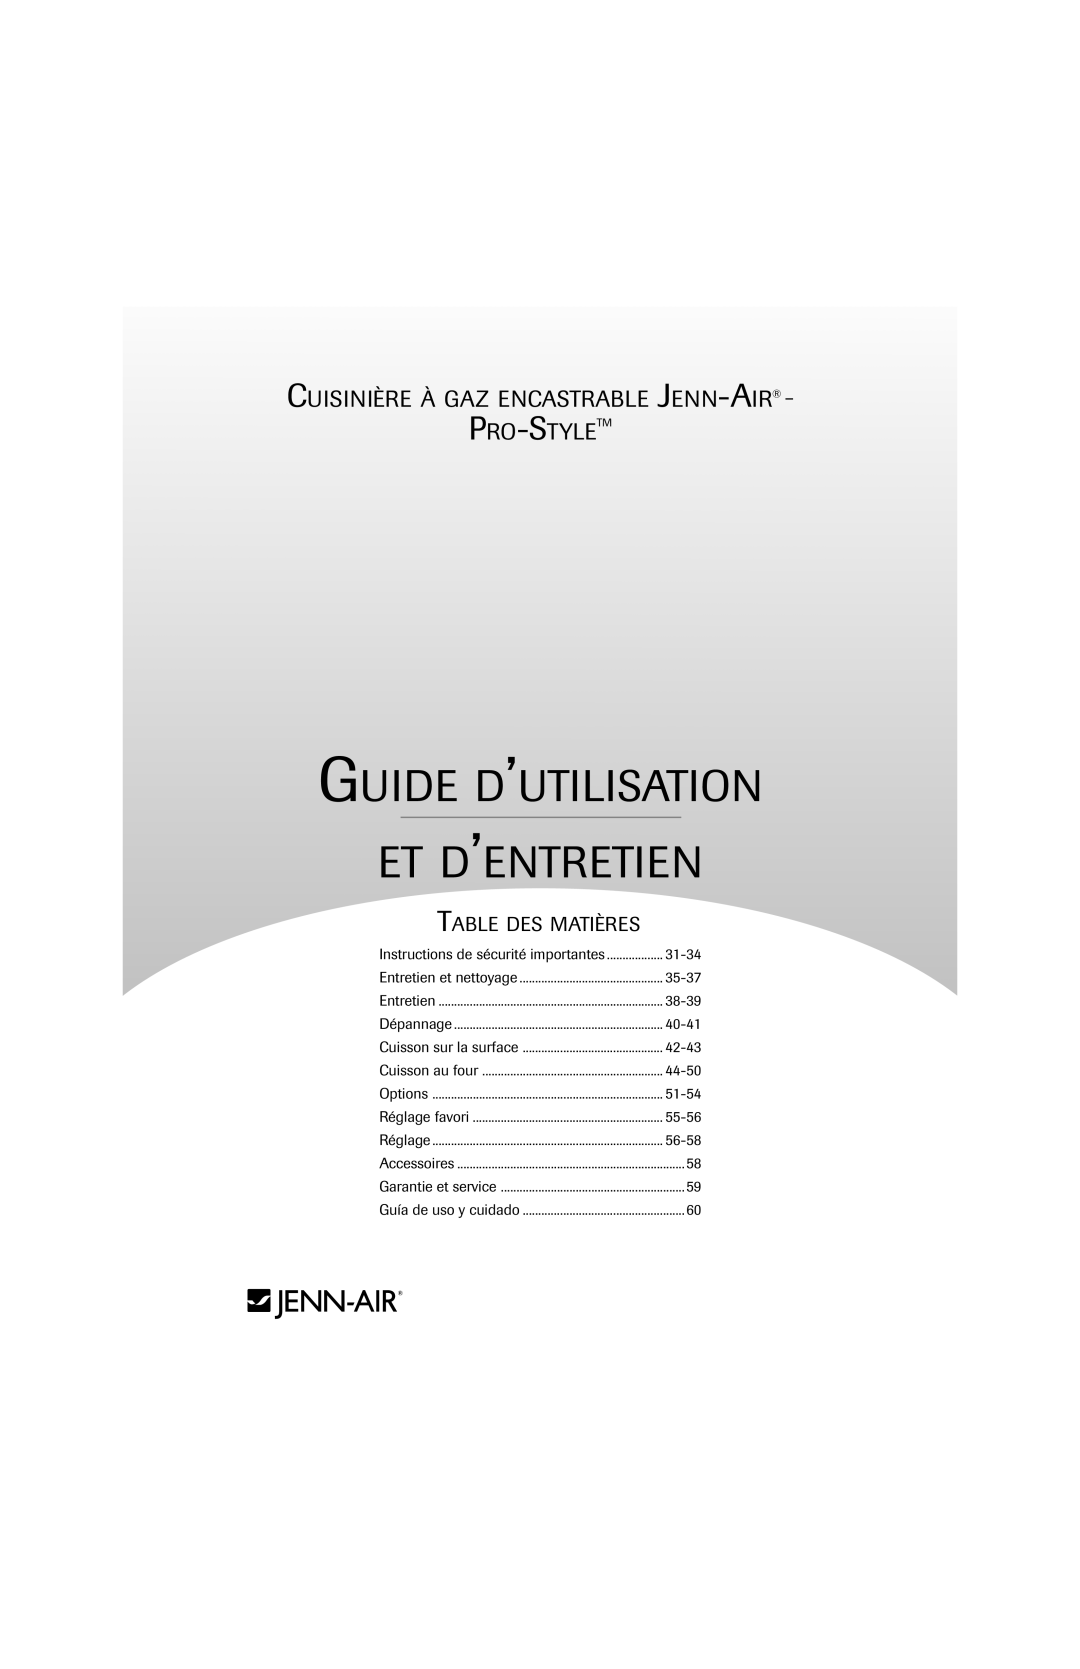 Jenn-Air 8113P757-60 Guide D’Utilisation Et D’Entretien, Cuisinière À Gaz Encastrable Jenn-Air, Pro-Styletm, Accessoires 